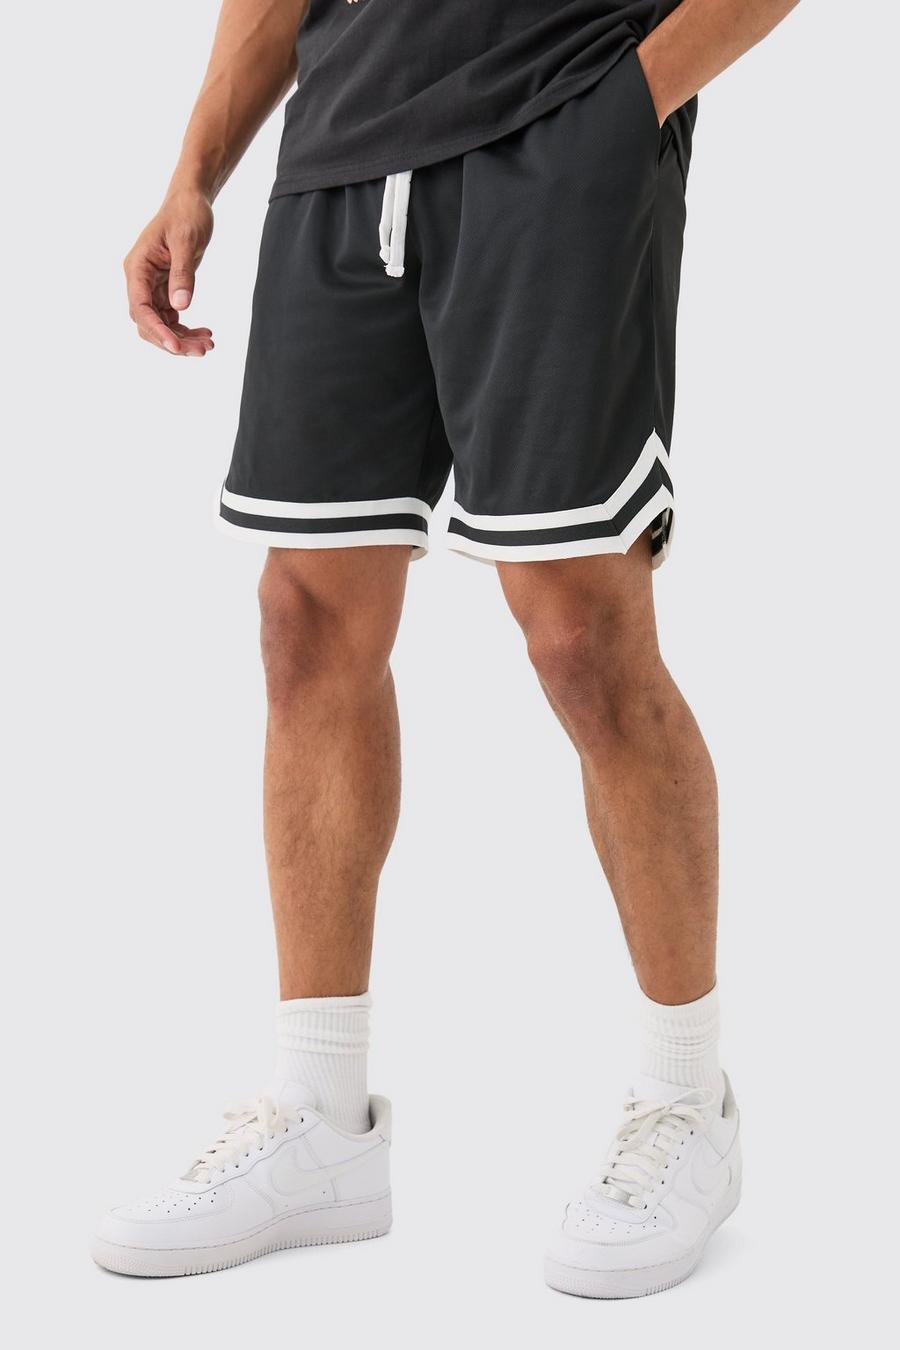 Black Middellange Mesh Basketbal Shorts